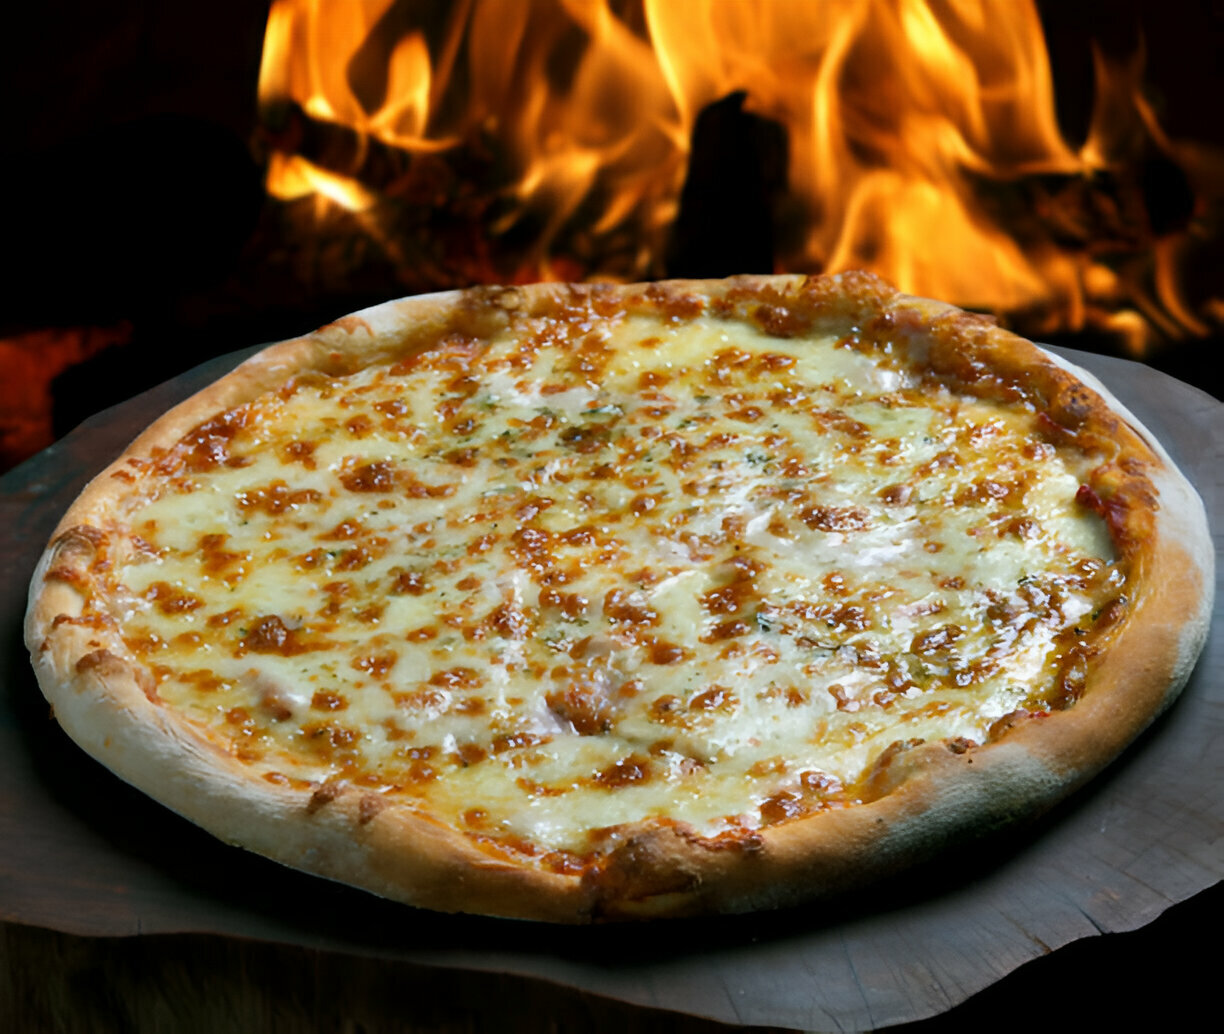 Celebre o dia mundial da pizza: ideias criativas para encantar seus clientes! - Blog do Mercantil Atacado